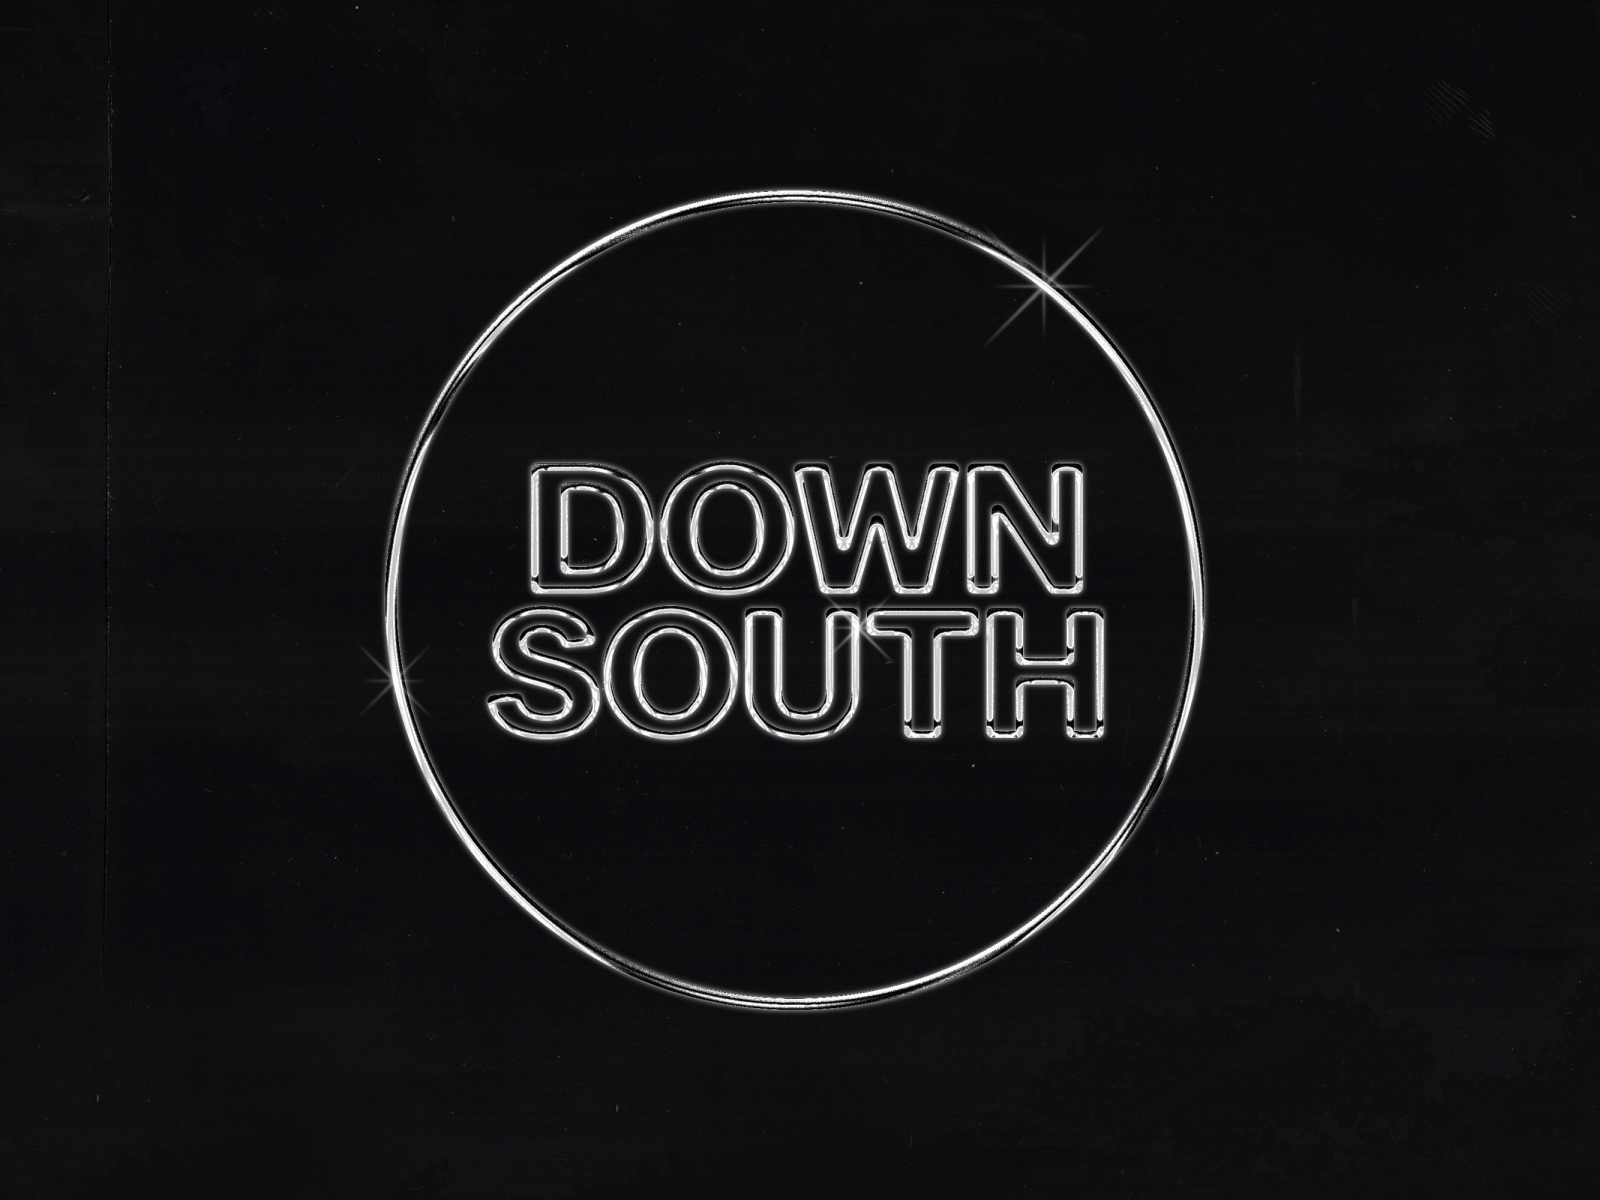 down logo